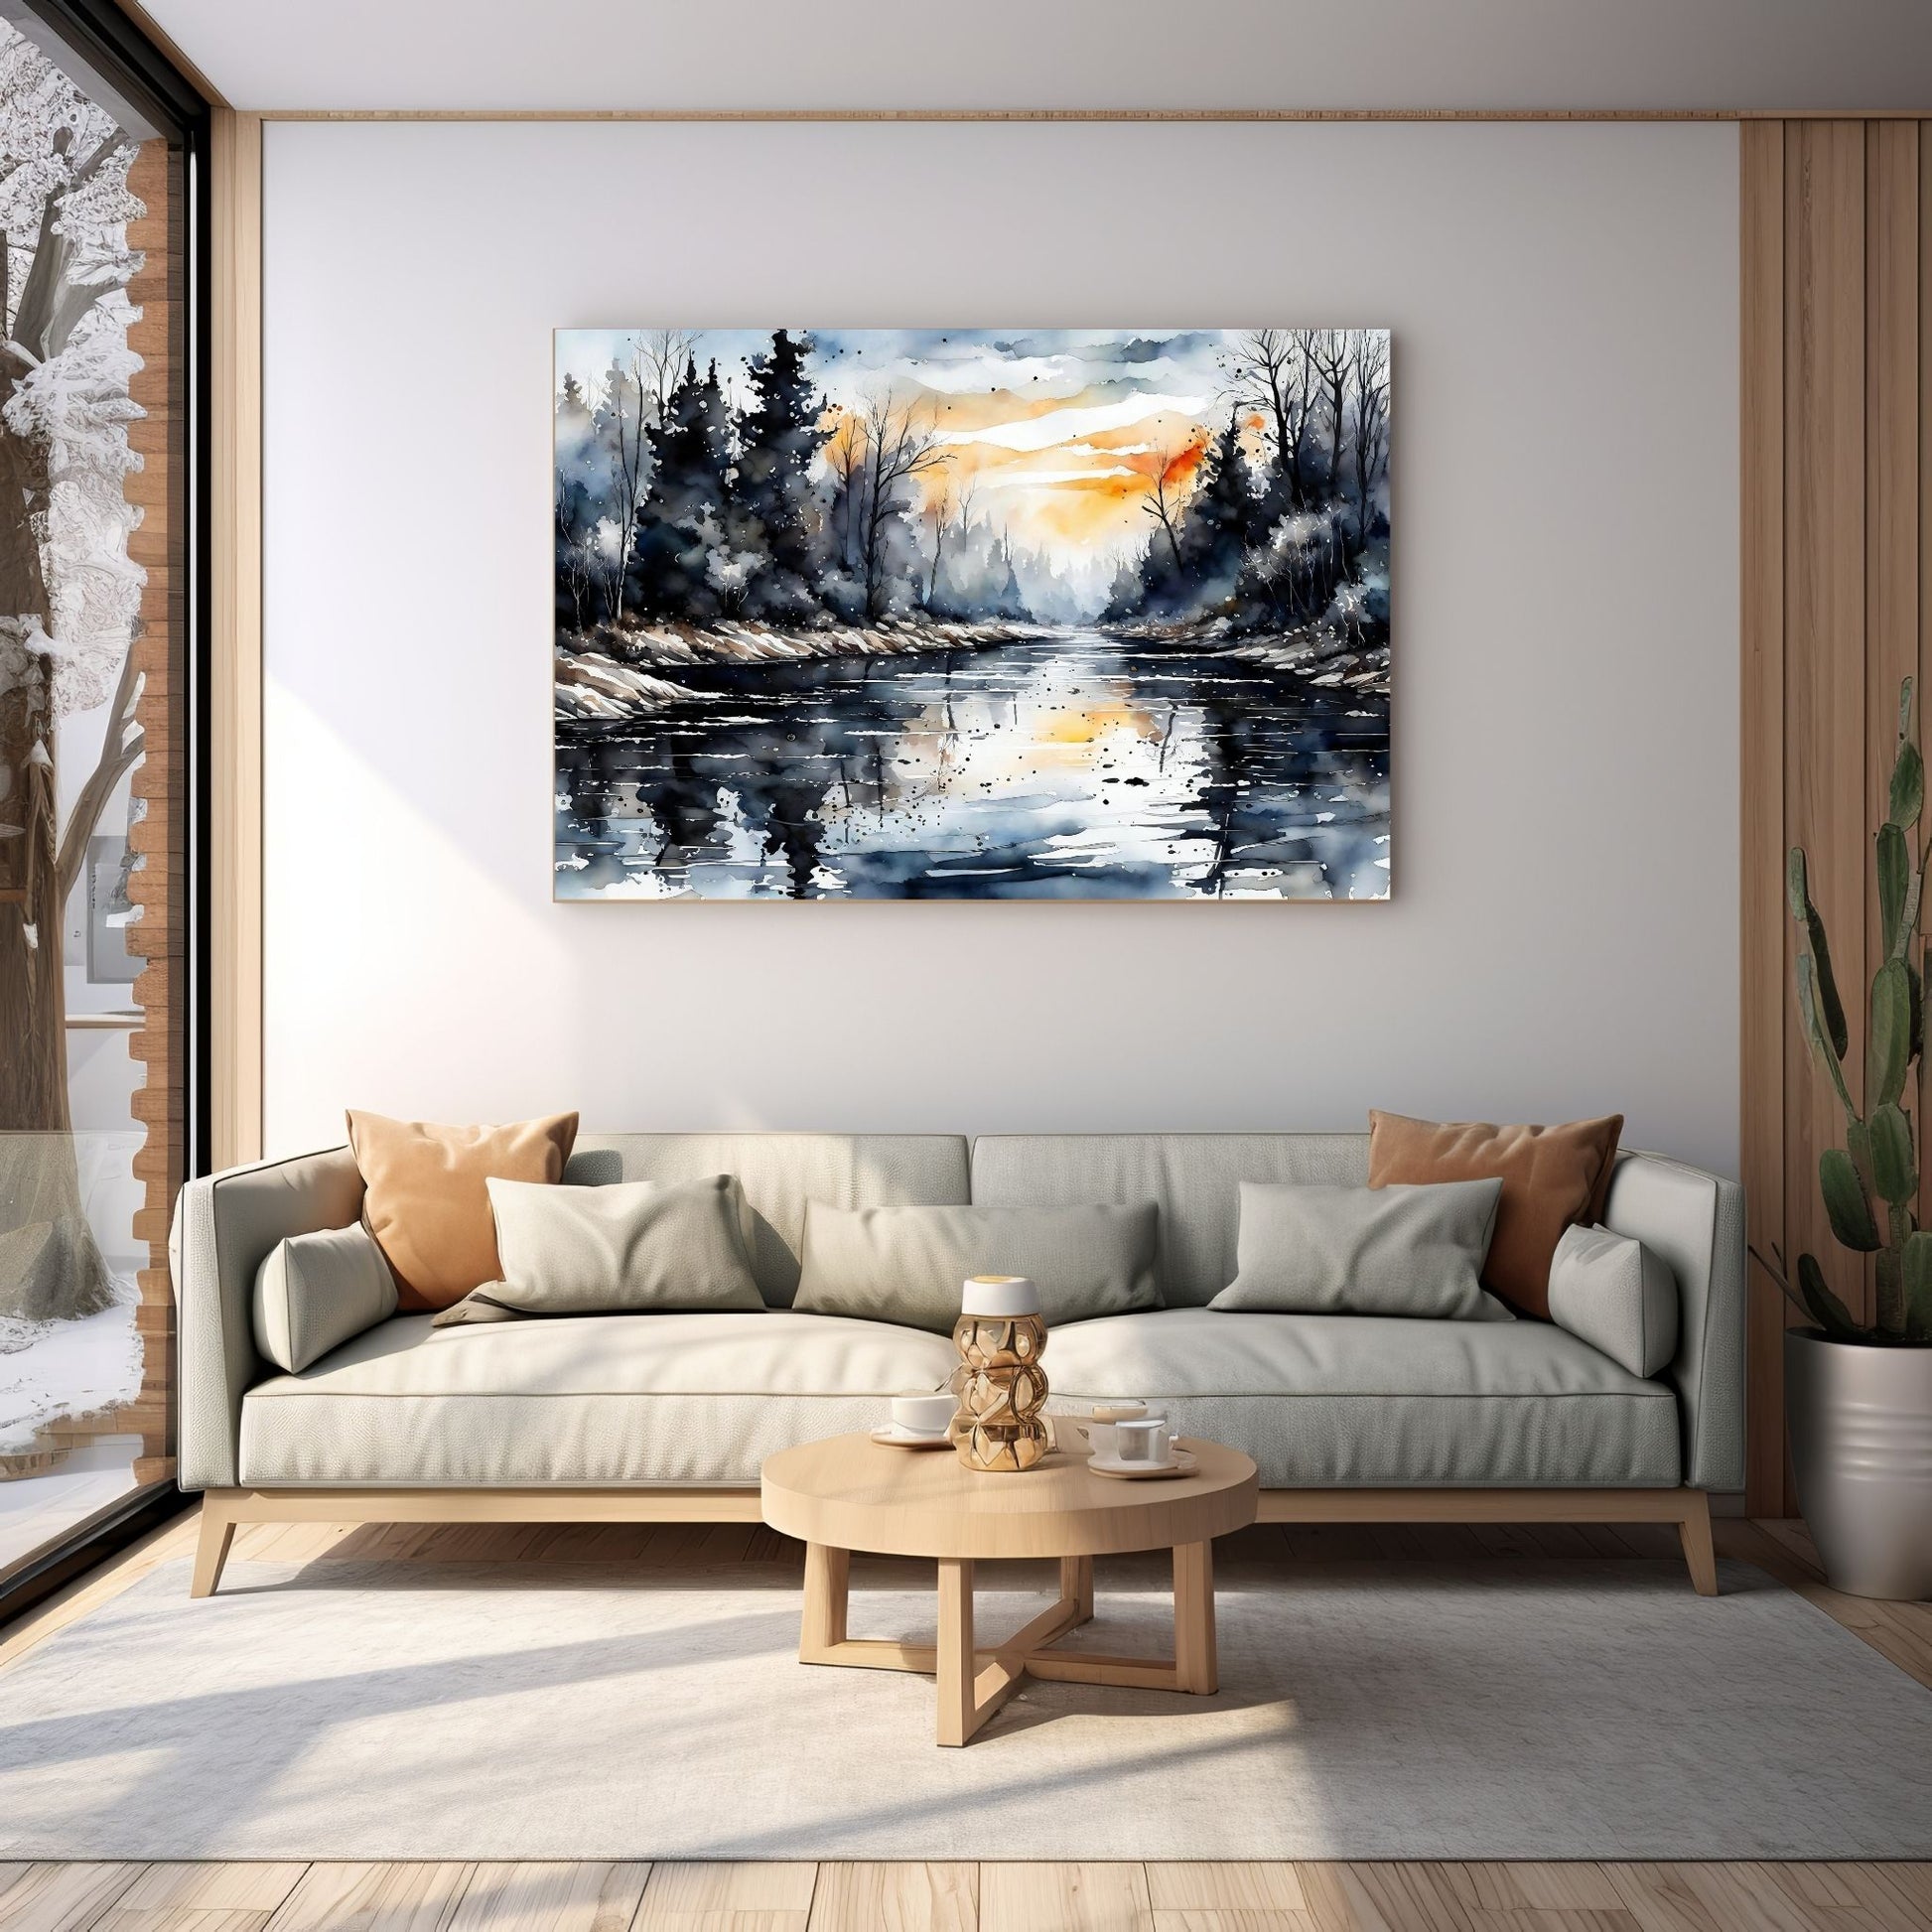 Digitalt kunstmaleri i akvarell som fanger essensen av vinterscenene med et sjarmerende landskap der snøfnugg danser i luften, og en himmel badet i kvelsdssol.. Illustrasjonsfoto som viser motivet på lerret som henger over en sofa.